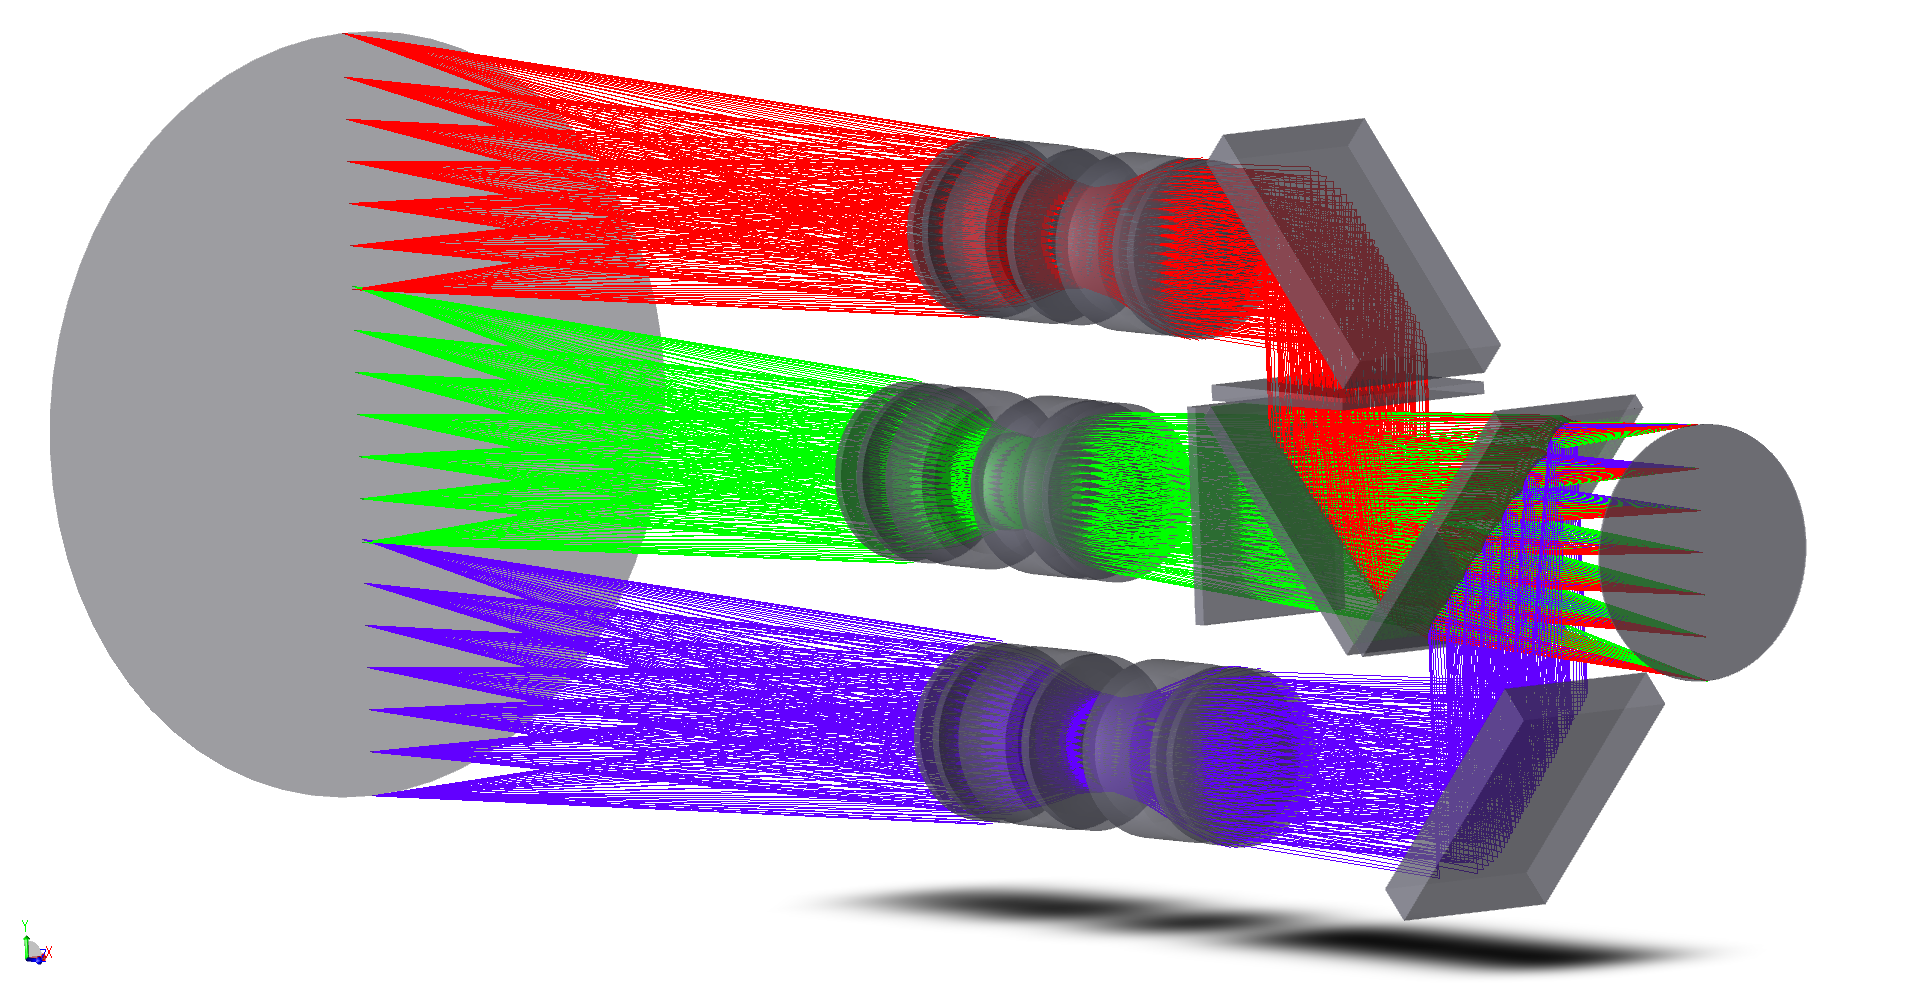 Darstellung des patentierten Optikkonzepts zur Erweiterung des Sichtfeldes von Kamerasystemen